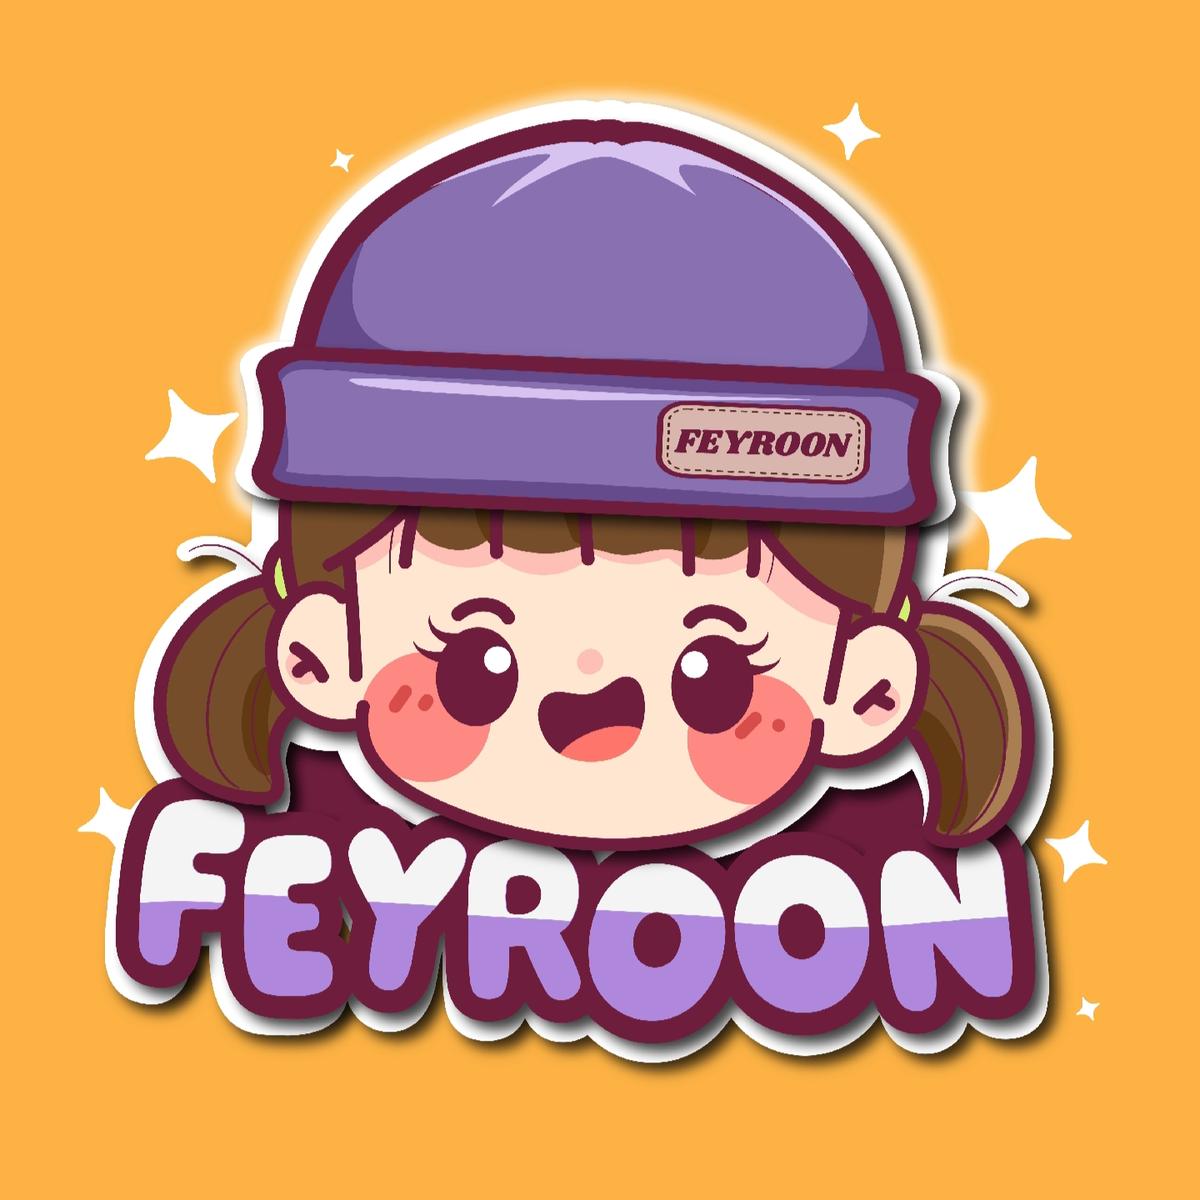 Feyroon